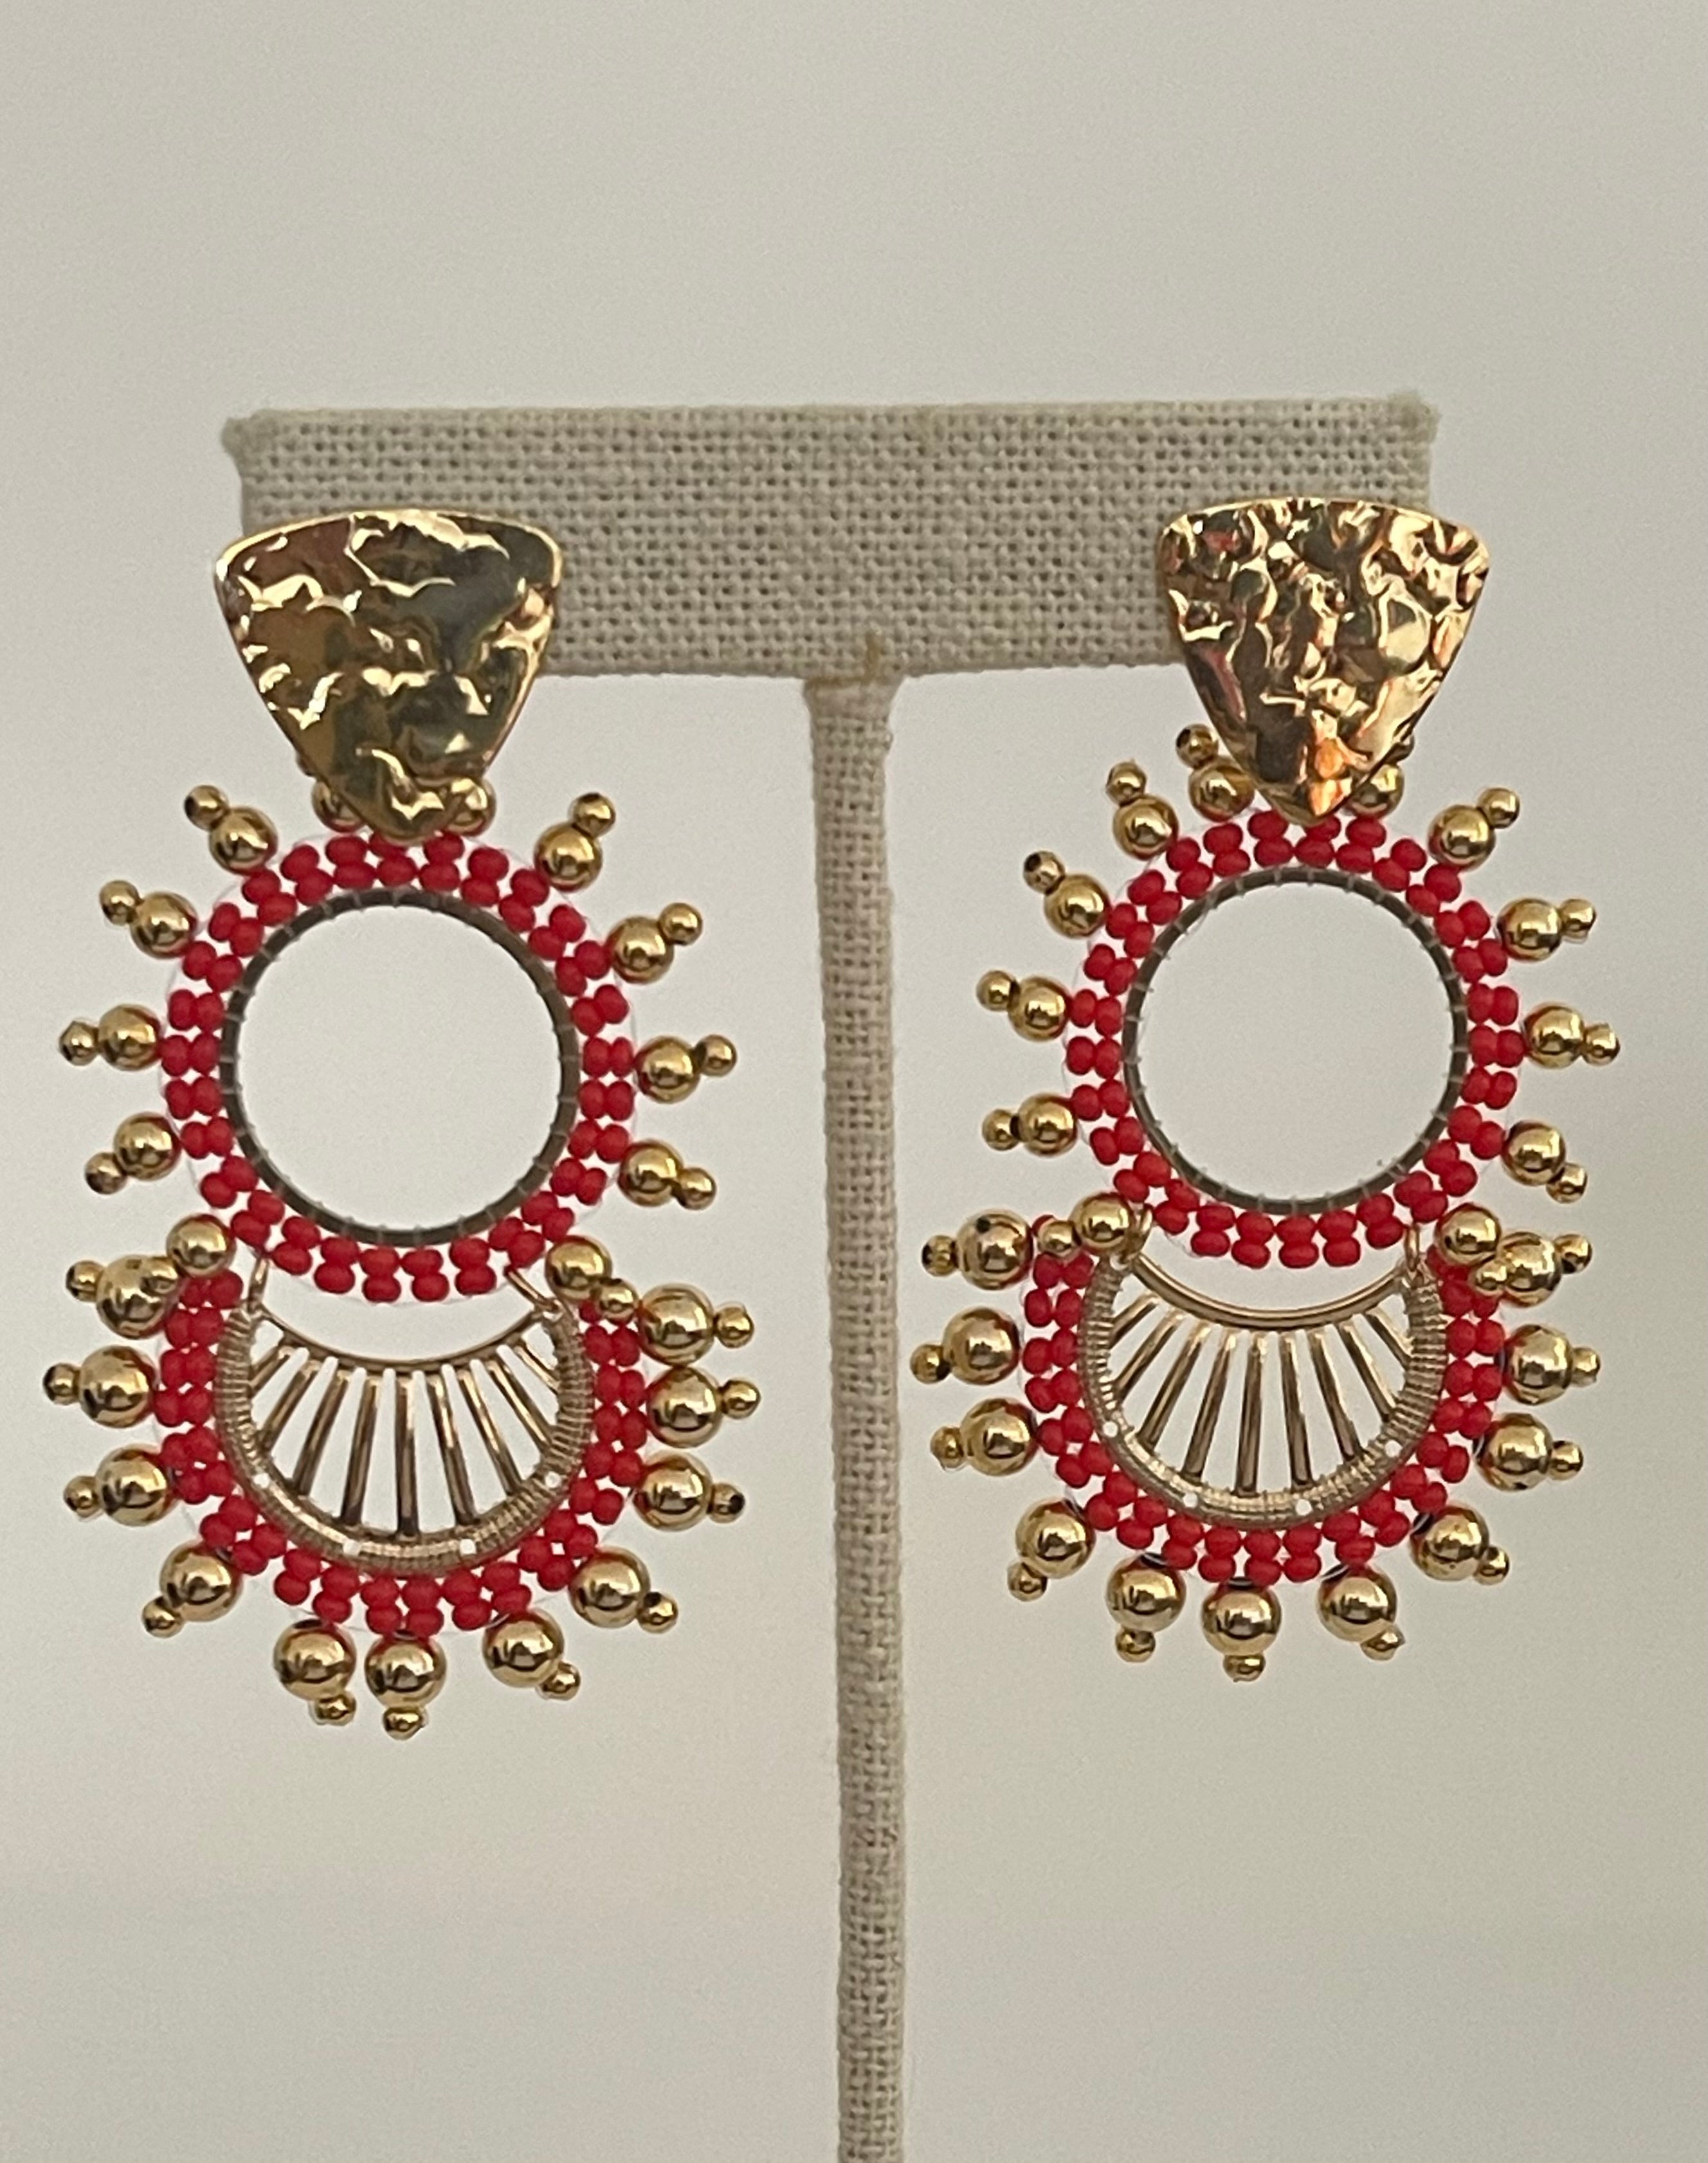 Double hoop earrings woven with beads